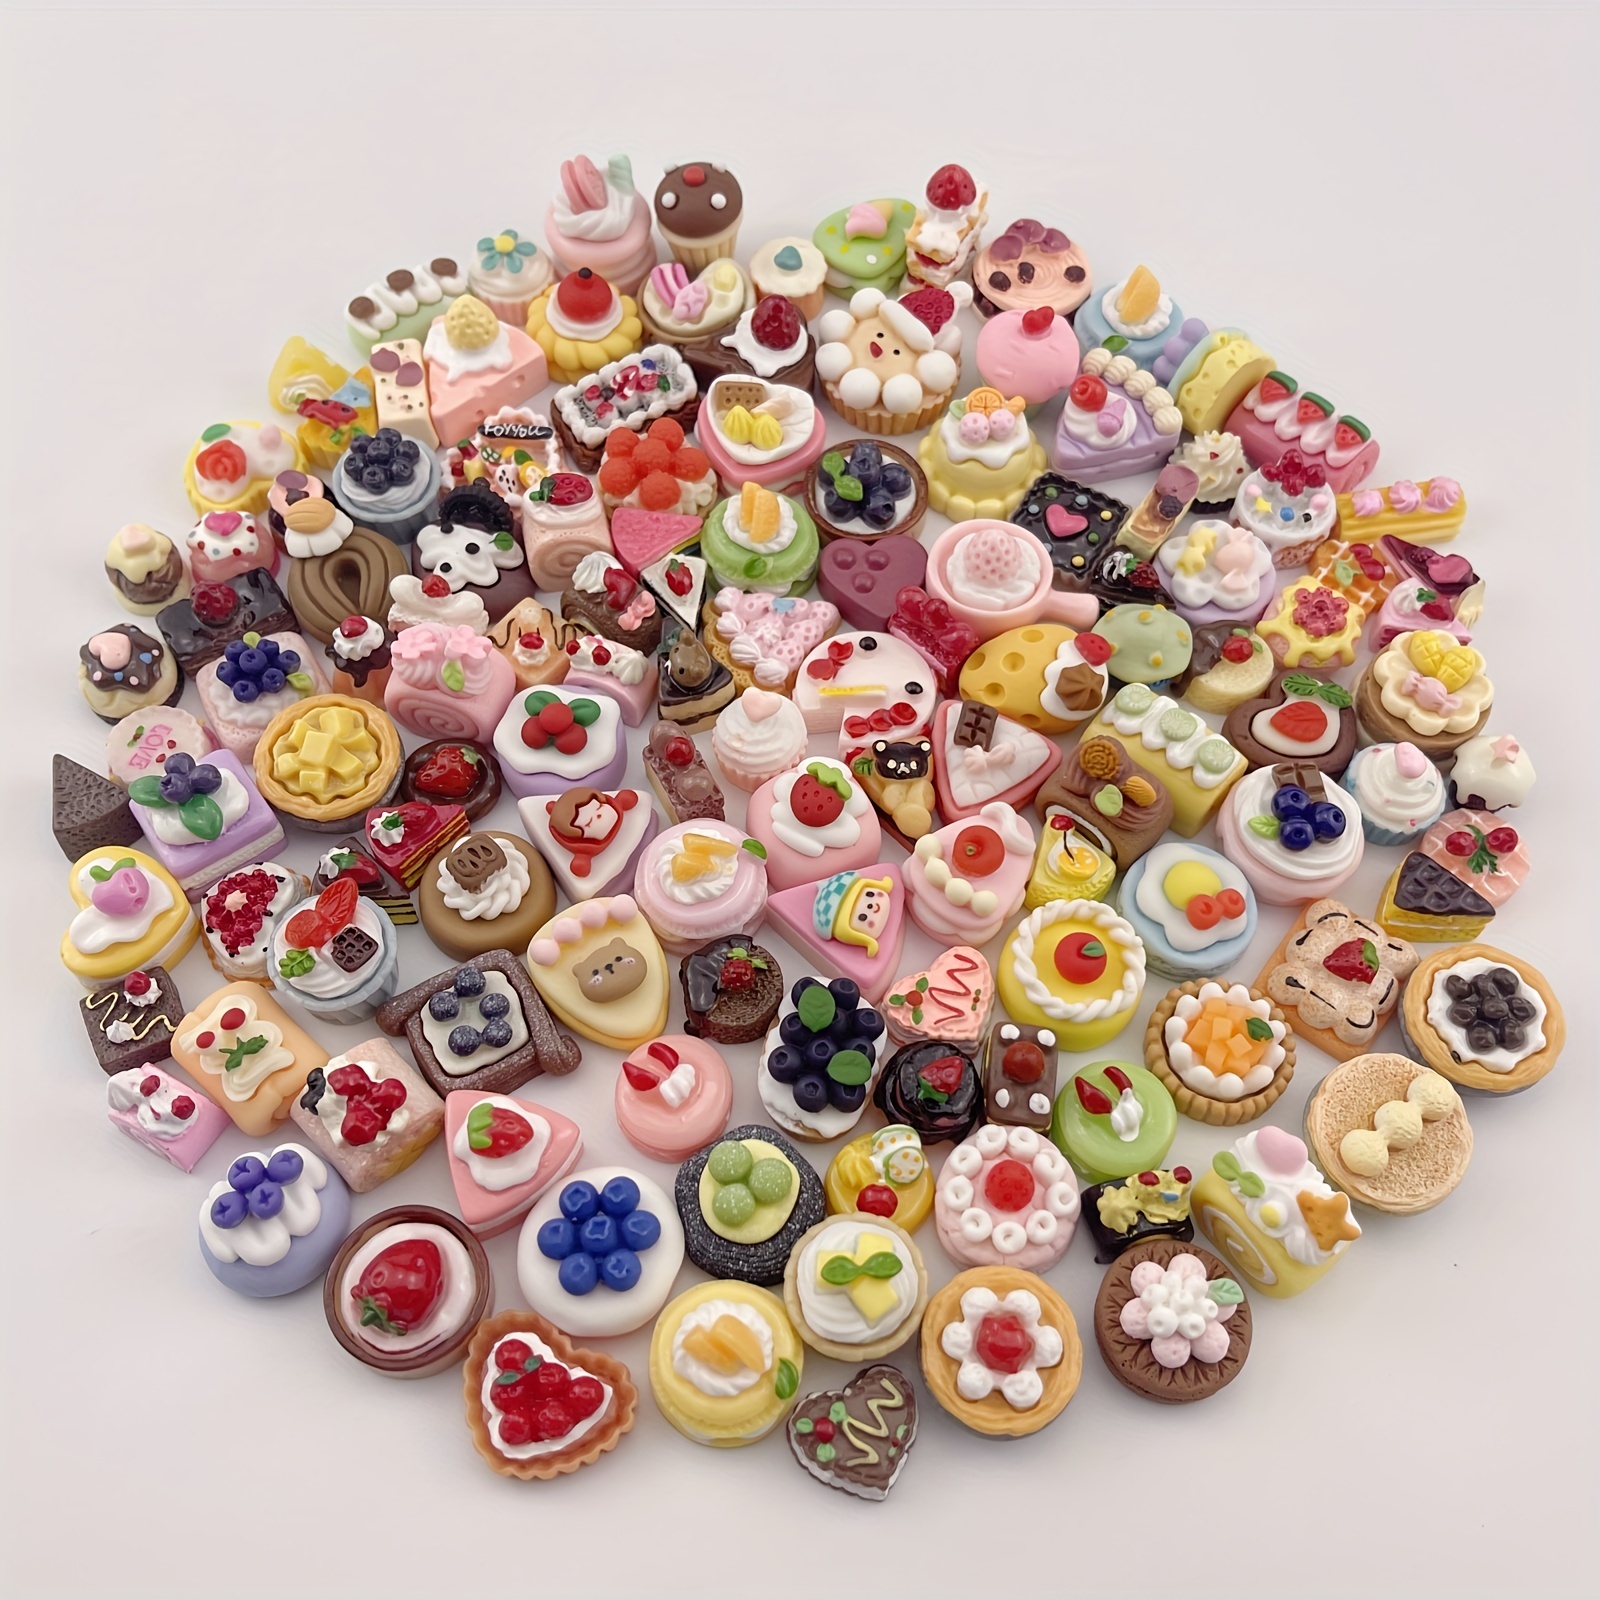 Gâteau miniature jouet maison de poupée Mini accessoires de